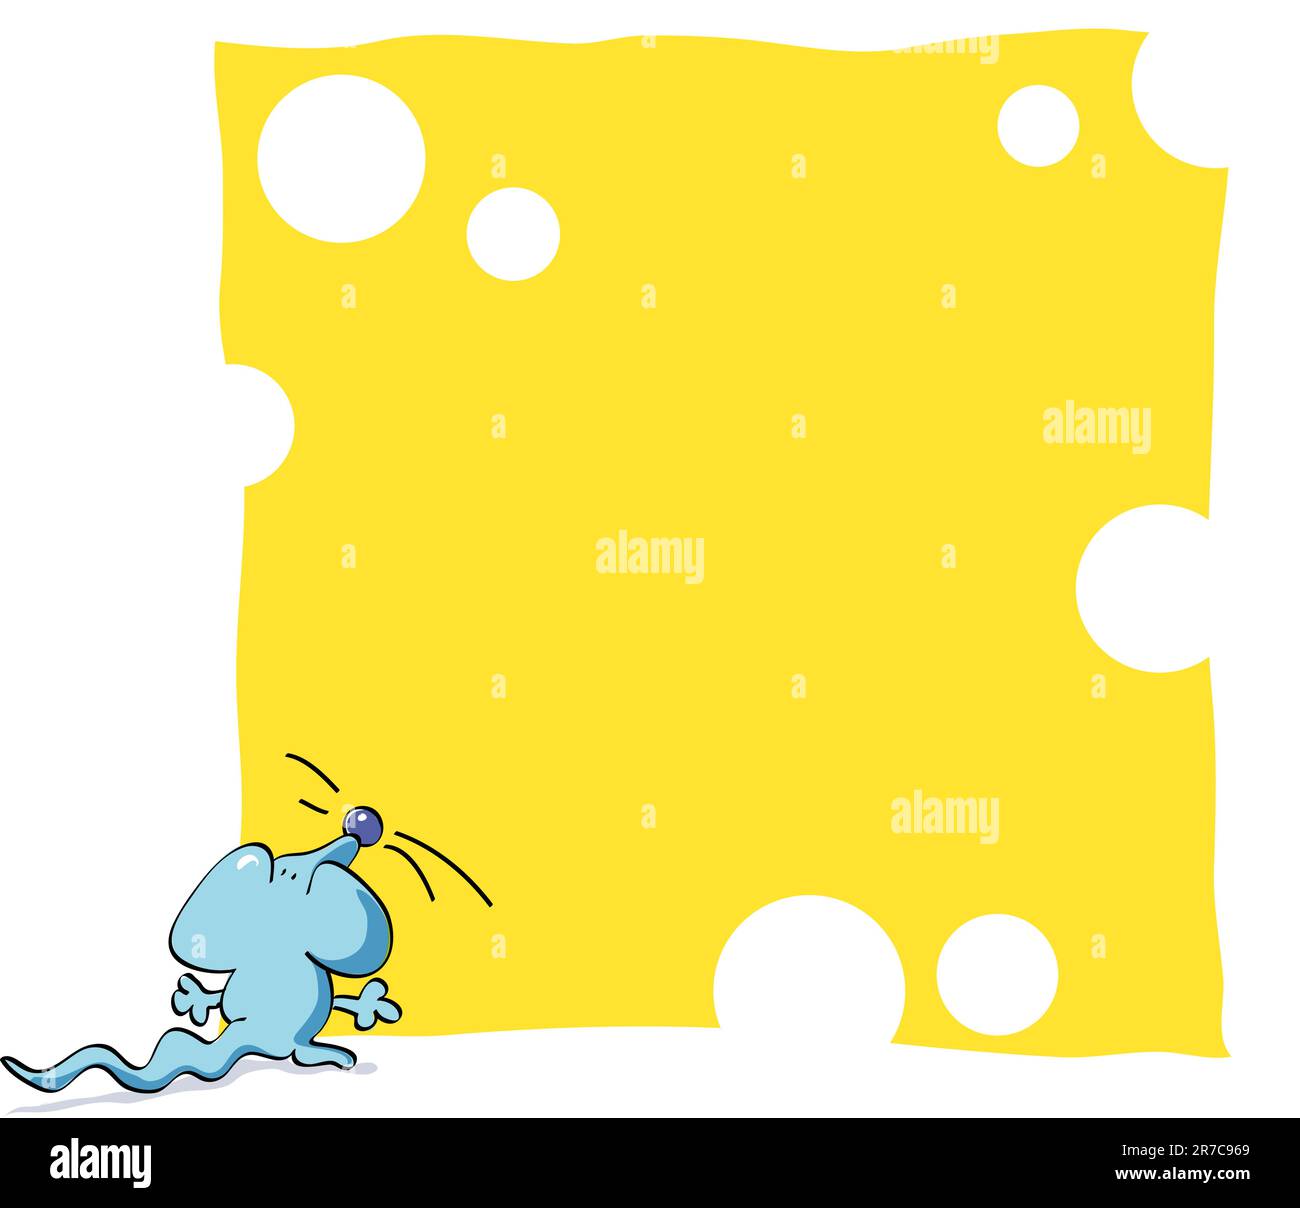 Bleu souris manger fond gruyère, fromage jaune Illustration de Vecteur